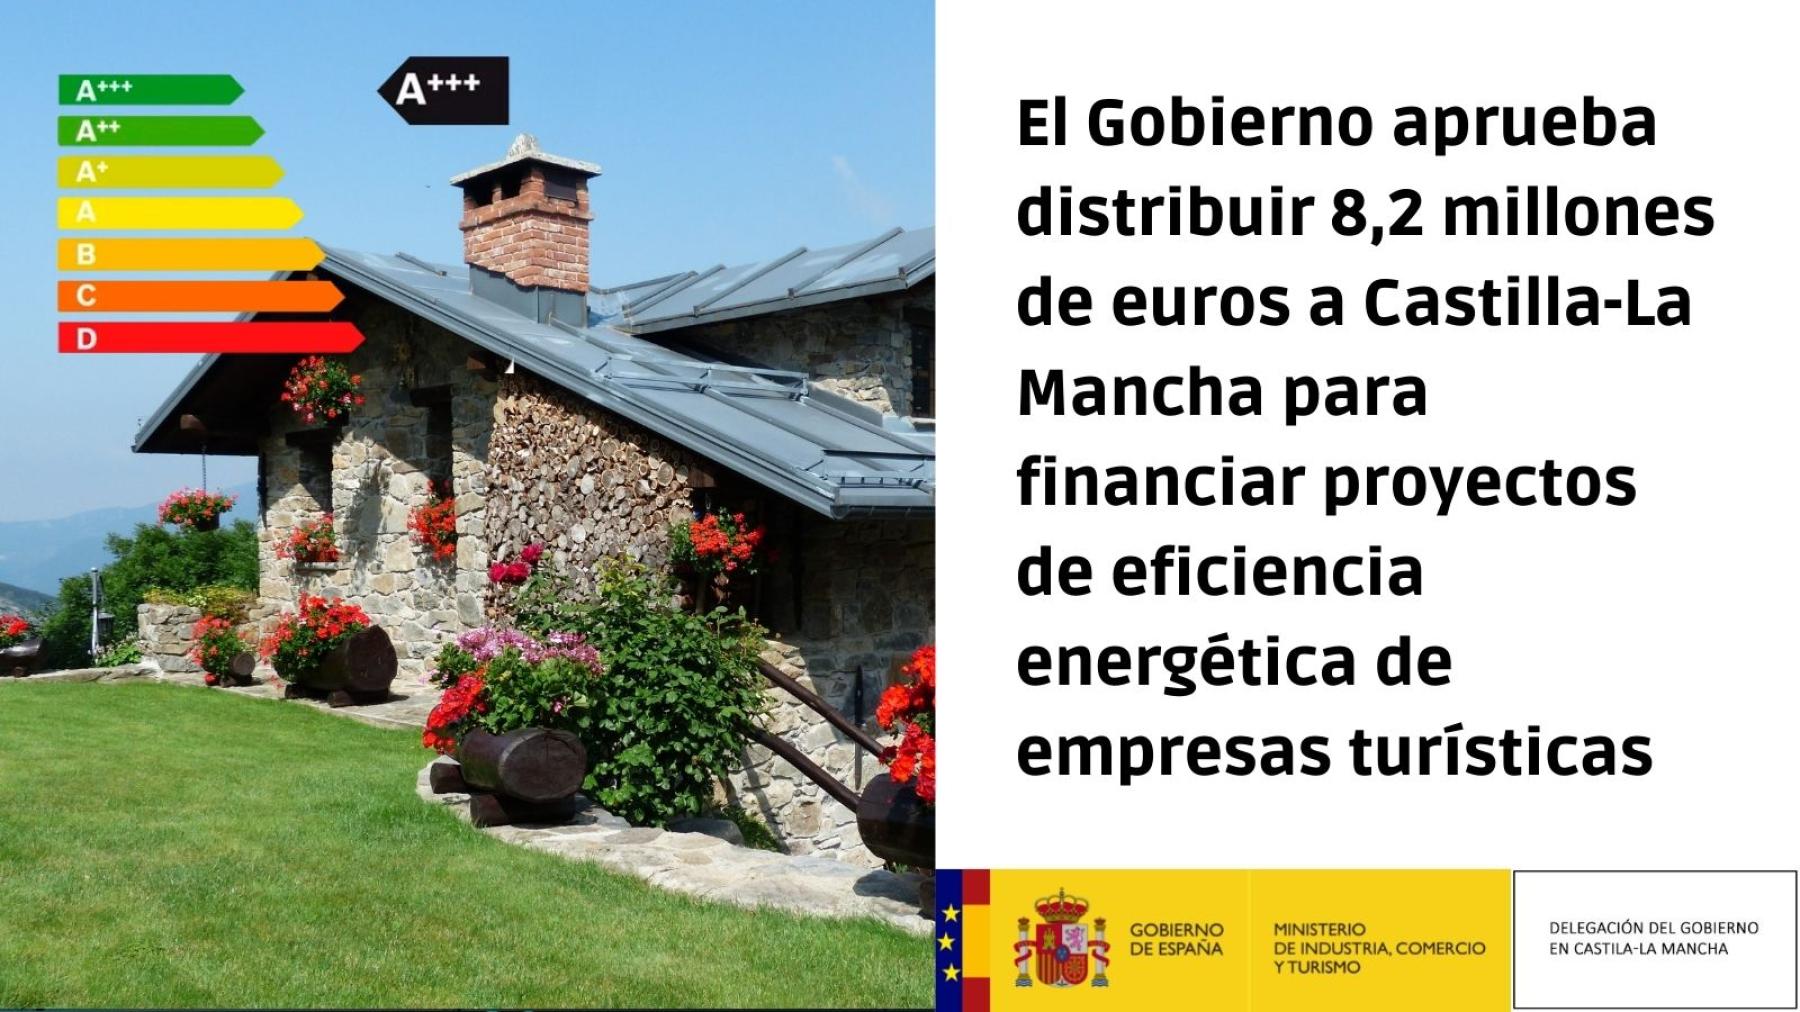 El Gobierno aprueba distribuir 8,2 millones de euros a Castilla-La Mancha para financiar proyectos de eficiencia energética de empresas turísticas